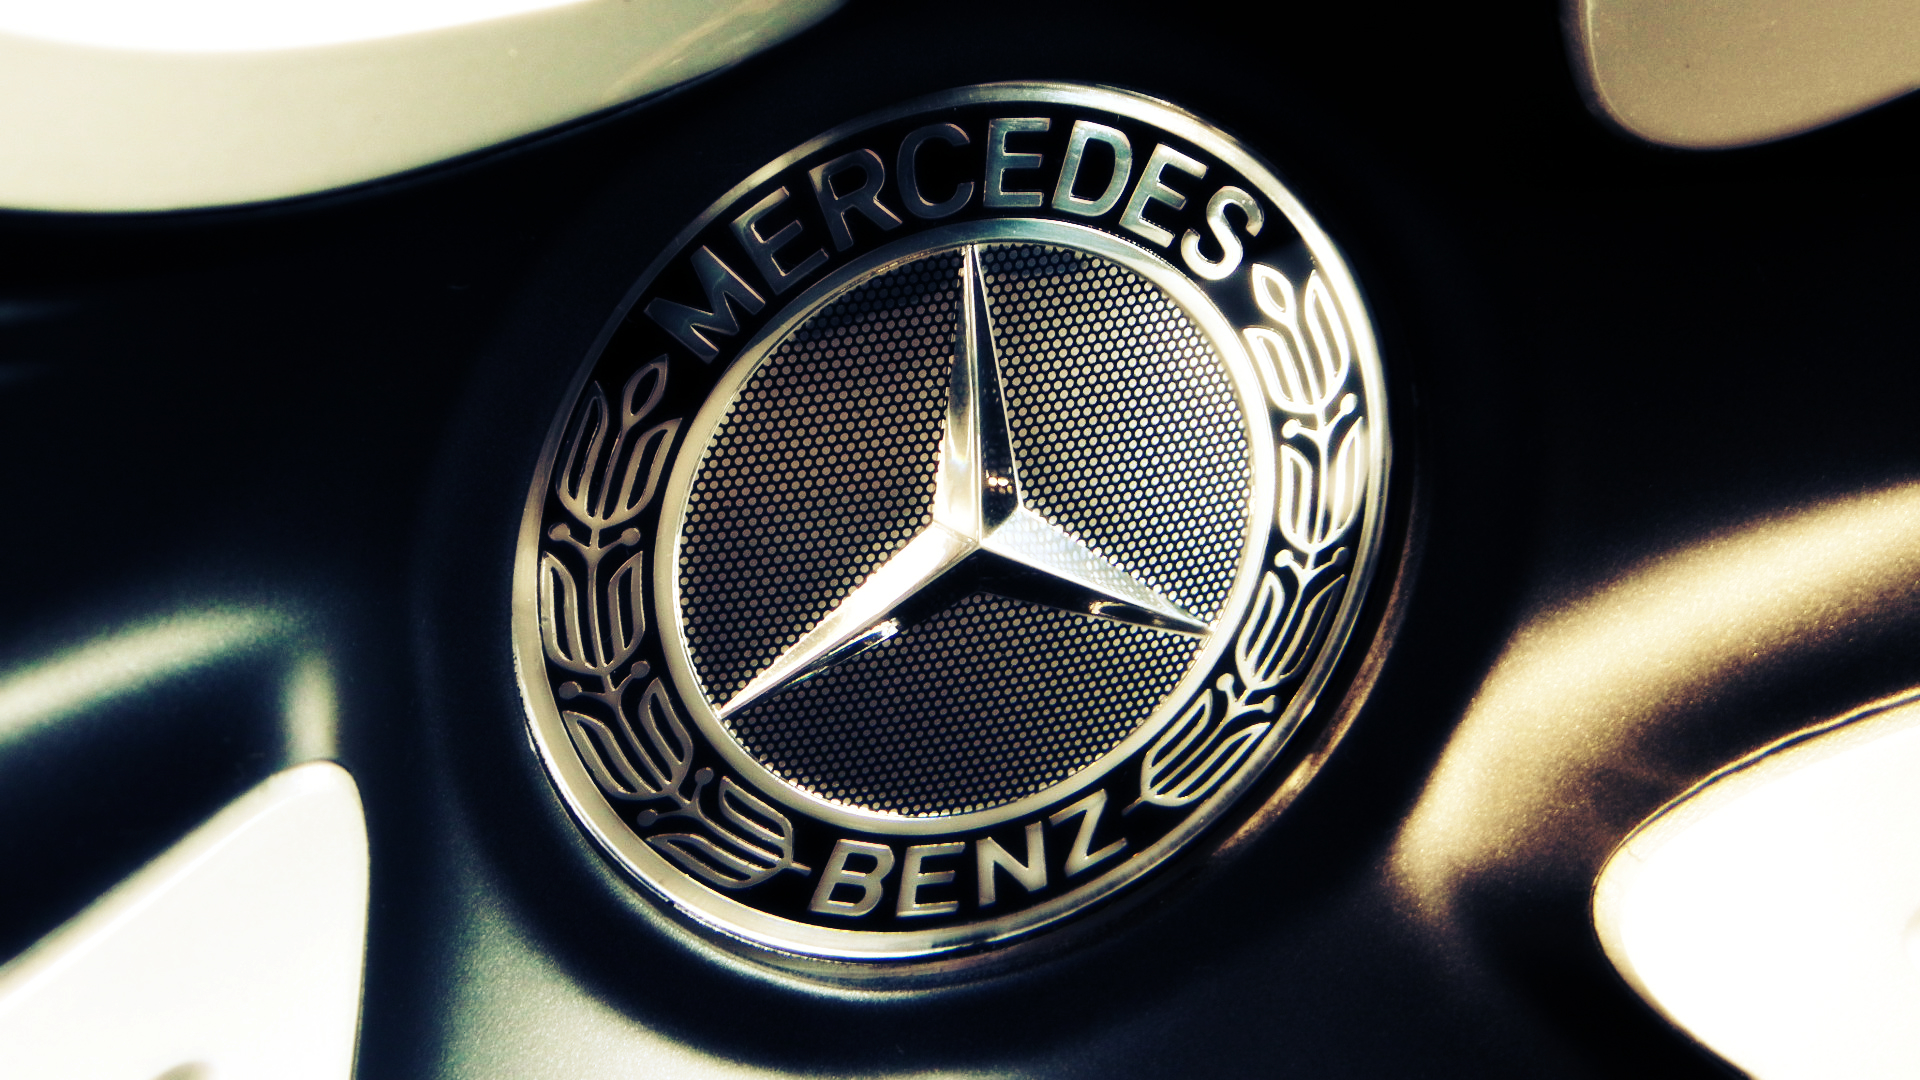 Mercedes Benz Logo Images | Download Free Desktop Wallpaper Images ...